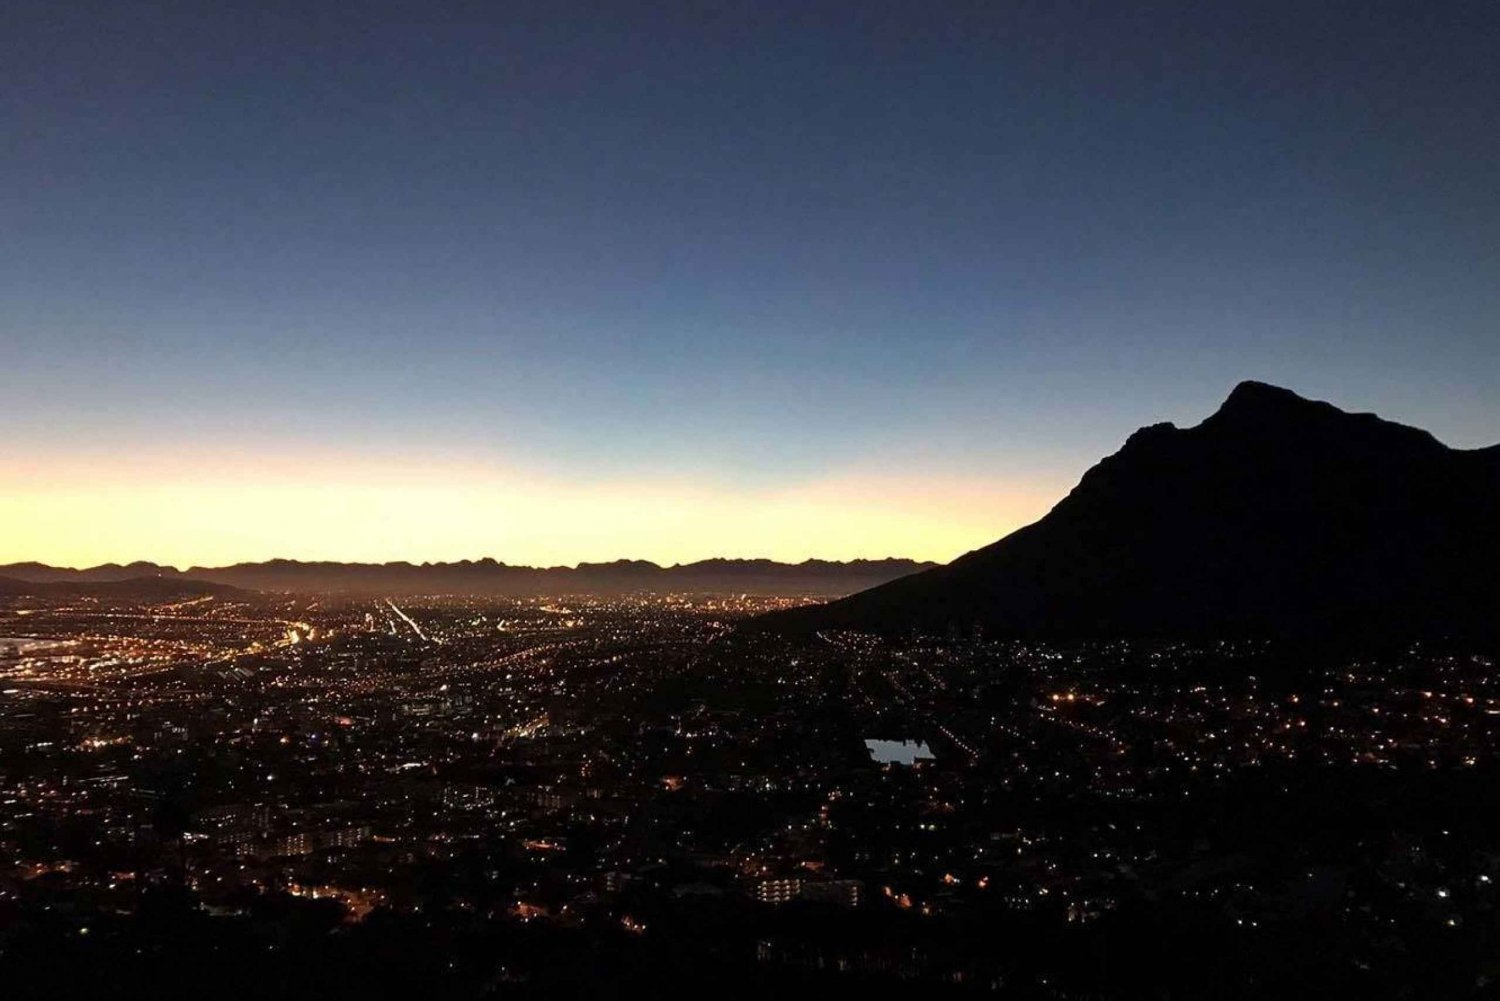 Città del Capo: escursione all'alba o al tramonto di Lion's Head